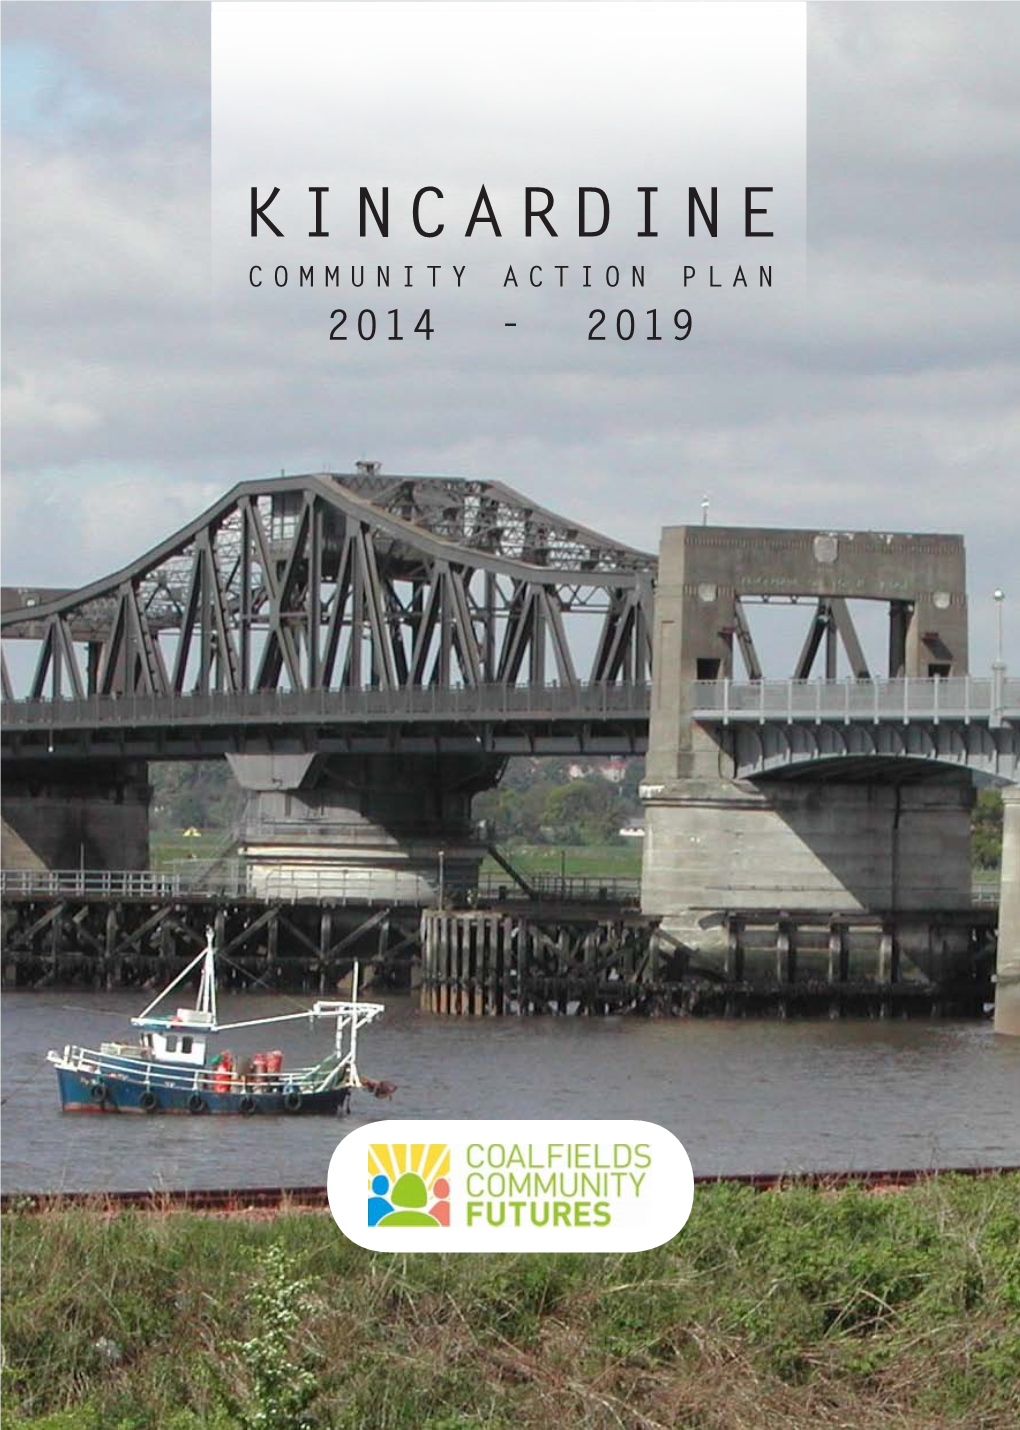 Kincardine Community Action Plan 2014 - 2019 Contents